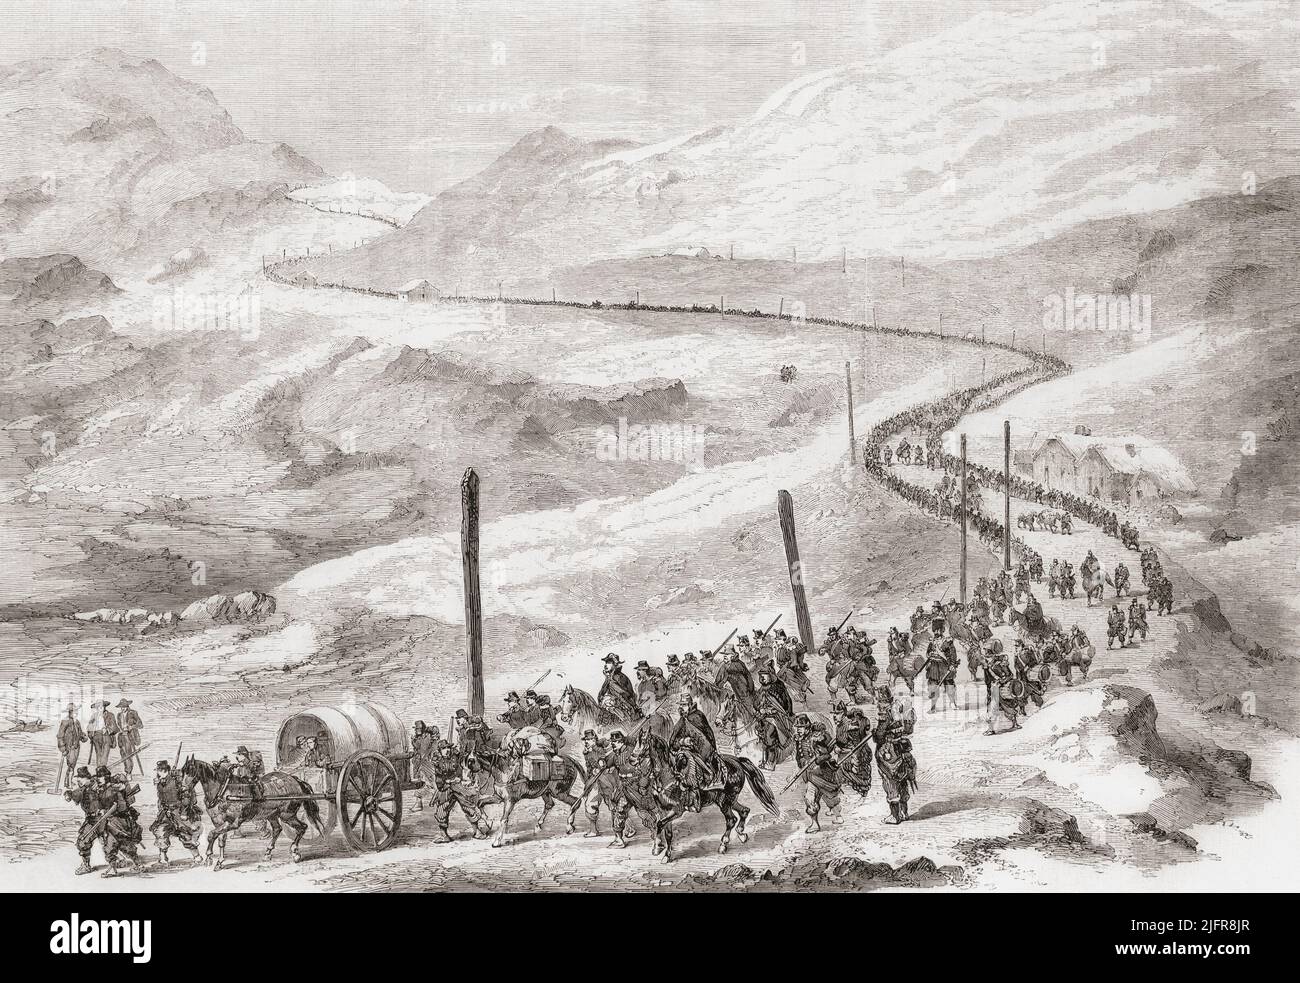 2. Division des Generals Joseph Vinay, der zum IV. Korps der französischen Armee gehört, erreicht Piemont über den Mont Cenis Pass während des italienischen Unabhängigkeitskrieges von 2., der auch der französisch-österreichische Krieg, der österreichisch-sardische Krieg oder der Italienische Krieg von 1859 genannt wird. Aus L'Univers Illustre, Paris, 1859. Stockfoto